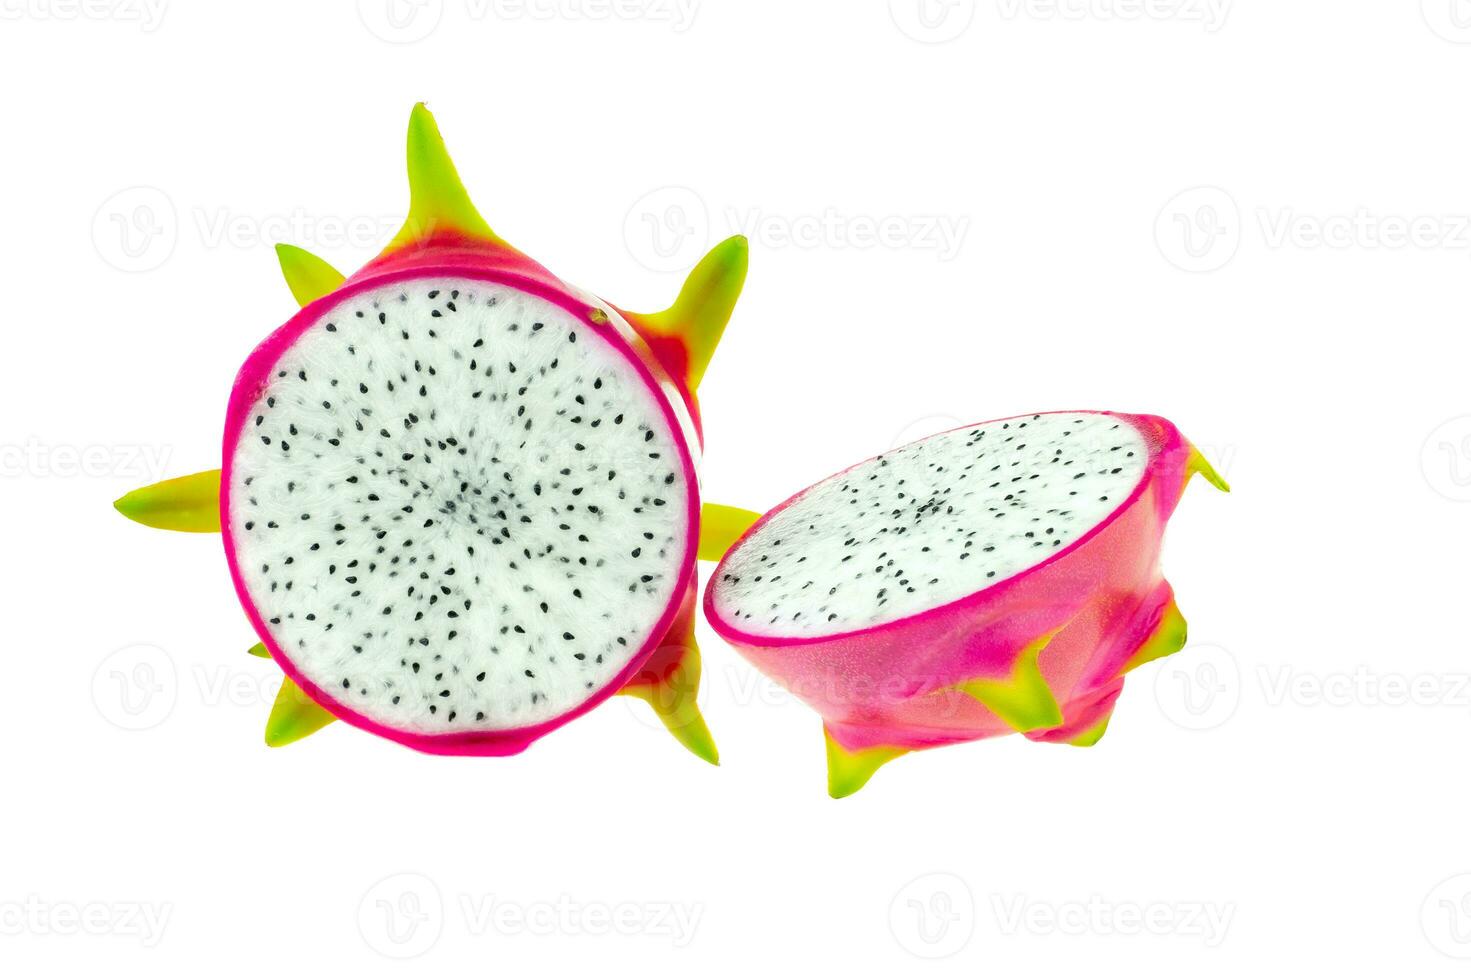 bellissimo frutto del drago rosa o pitaya foto